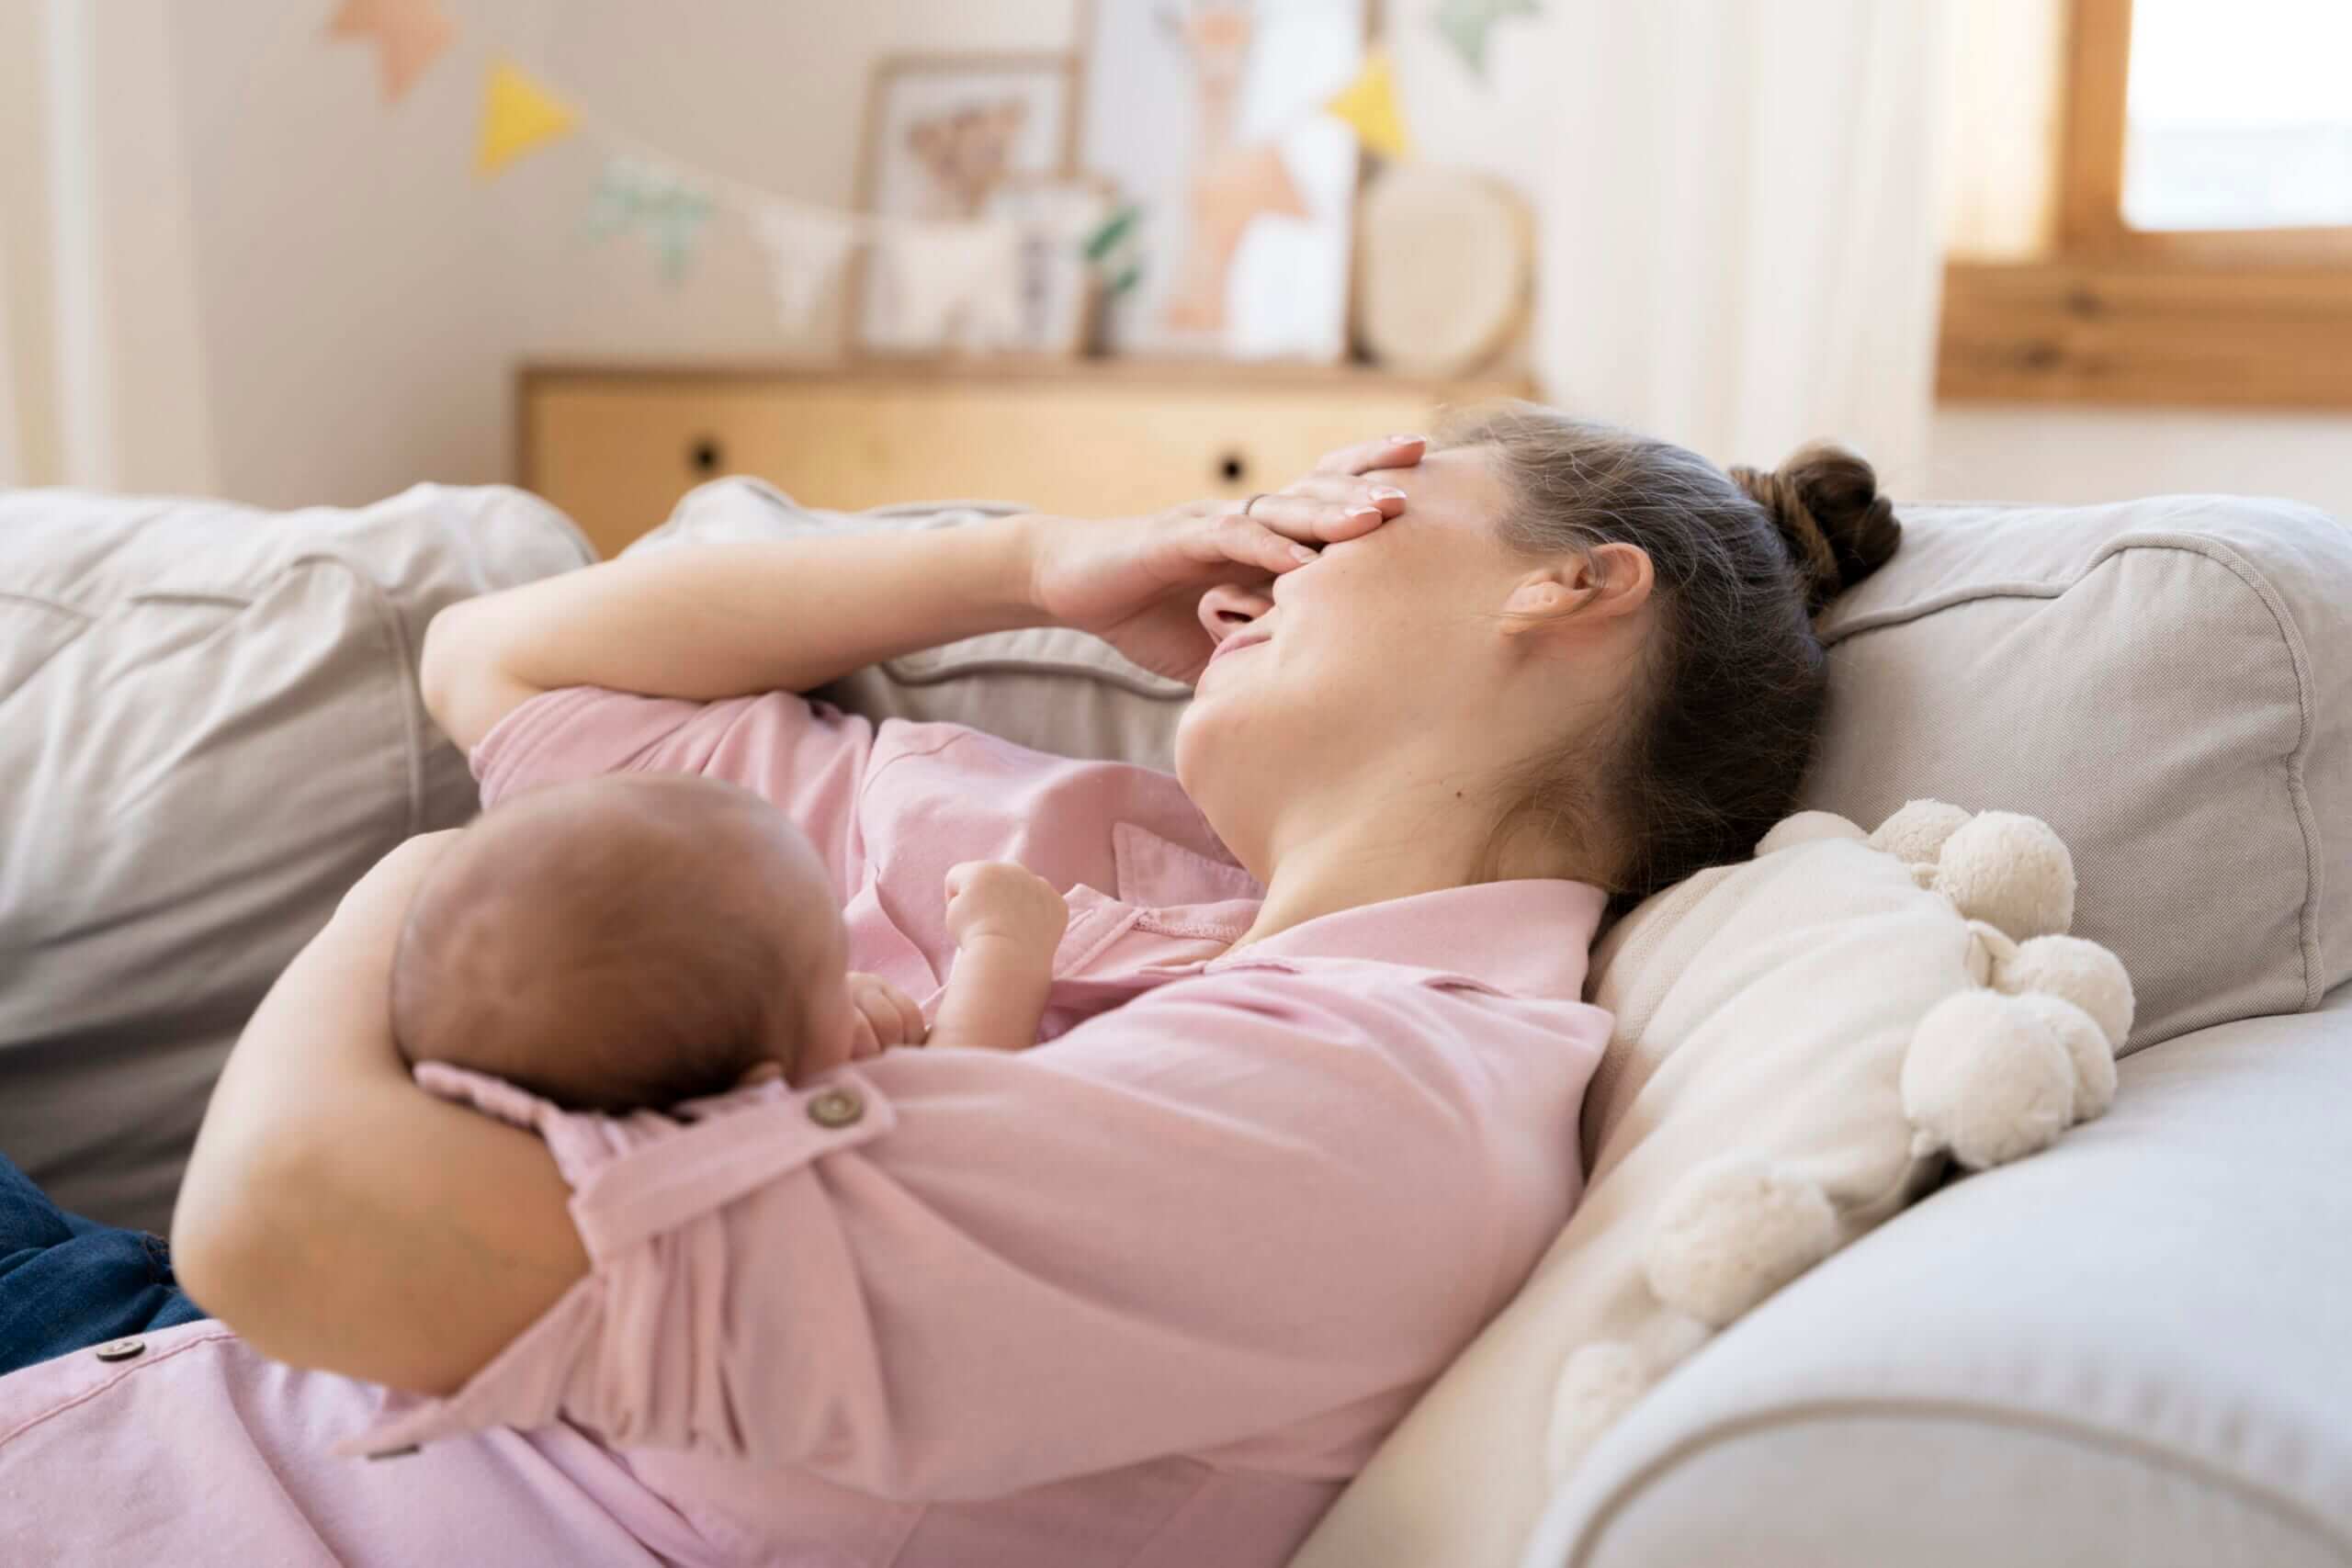 Thiếu sự hỗ trợ từ chồng trong việc chăm sóc em bé có thể khiến phụ nữ dễ bị trầm cảm sau sinh hơn.